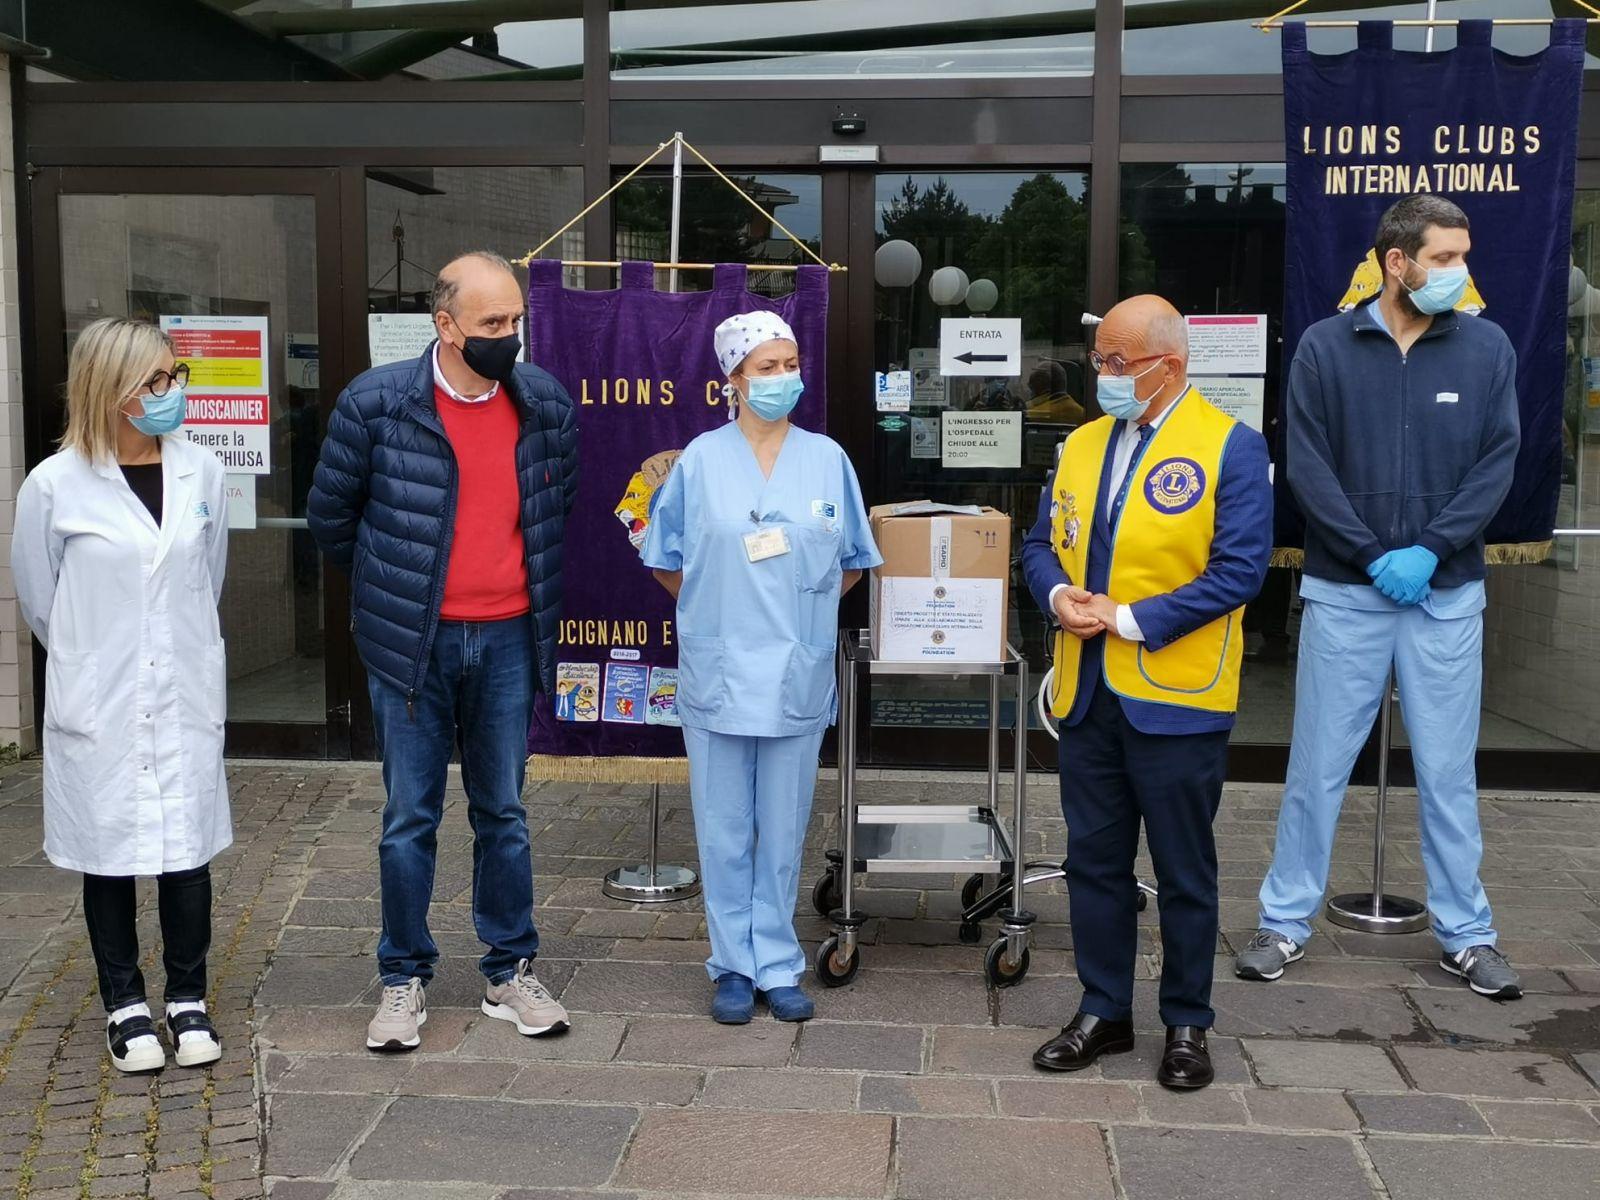 Lions Club: due ventilatori polmonari per l’ospedale San Donato